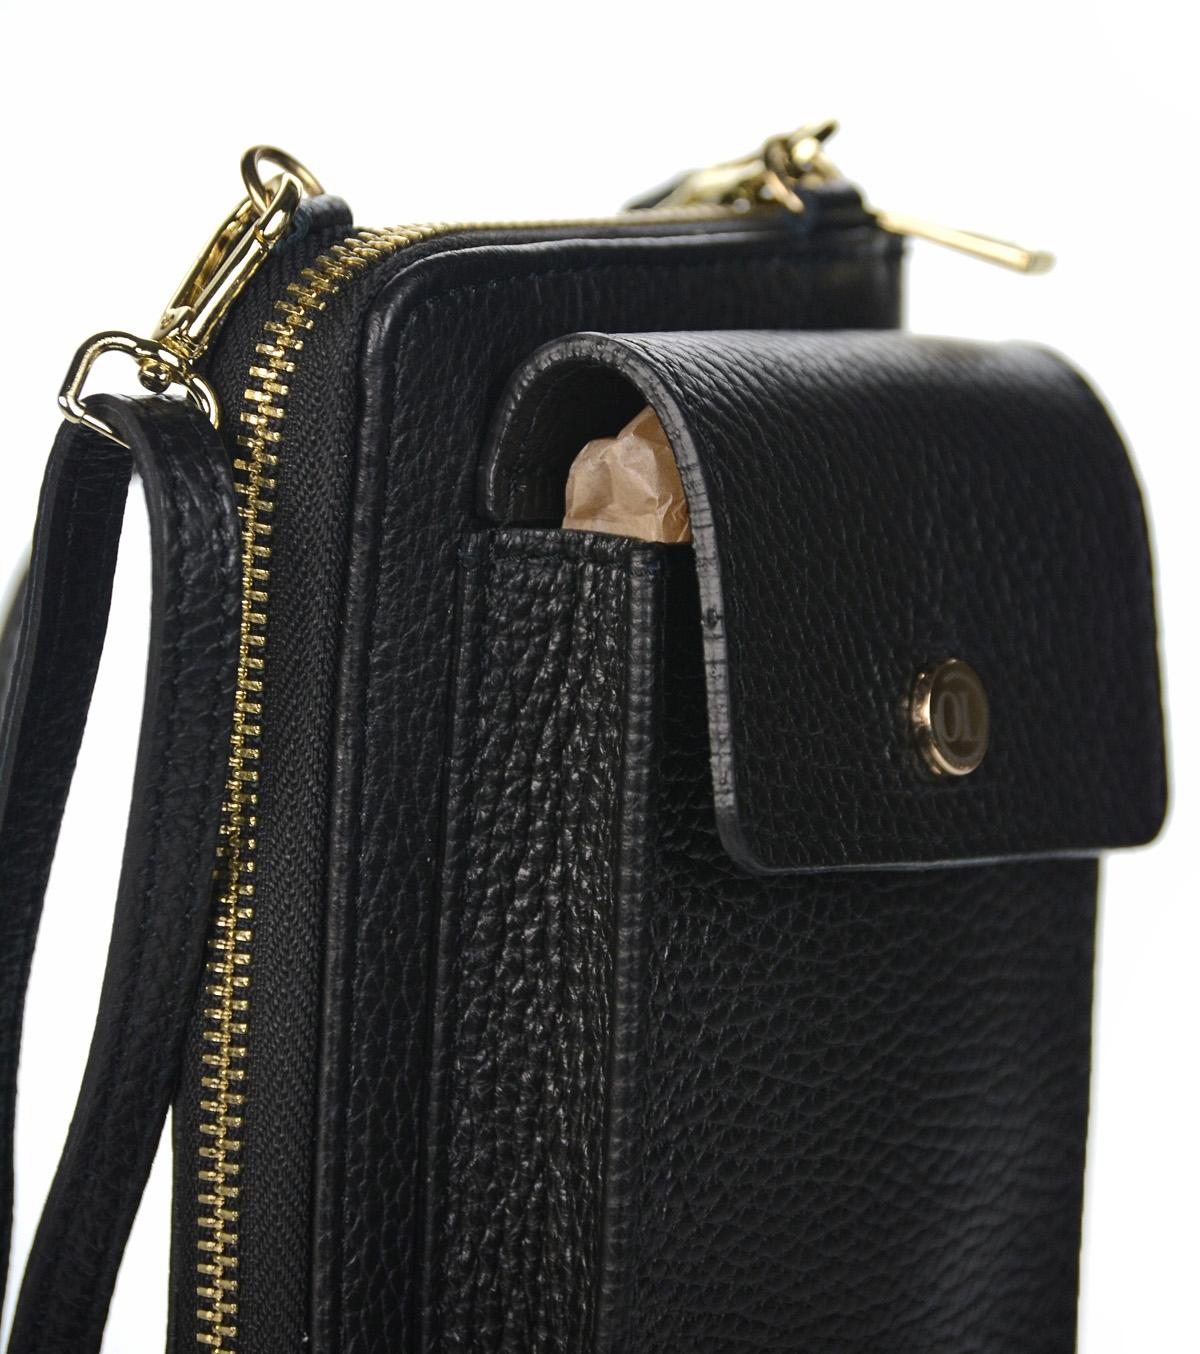 OLIVIA SHOES praktická kožená čierna crossbody peňaženka s vreckom Michaela, čie